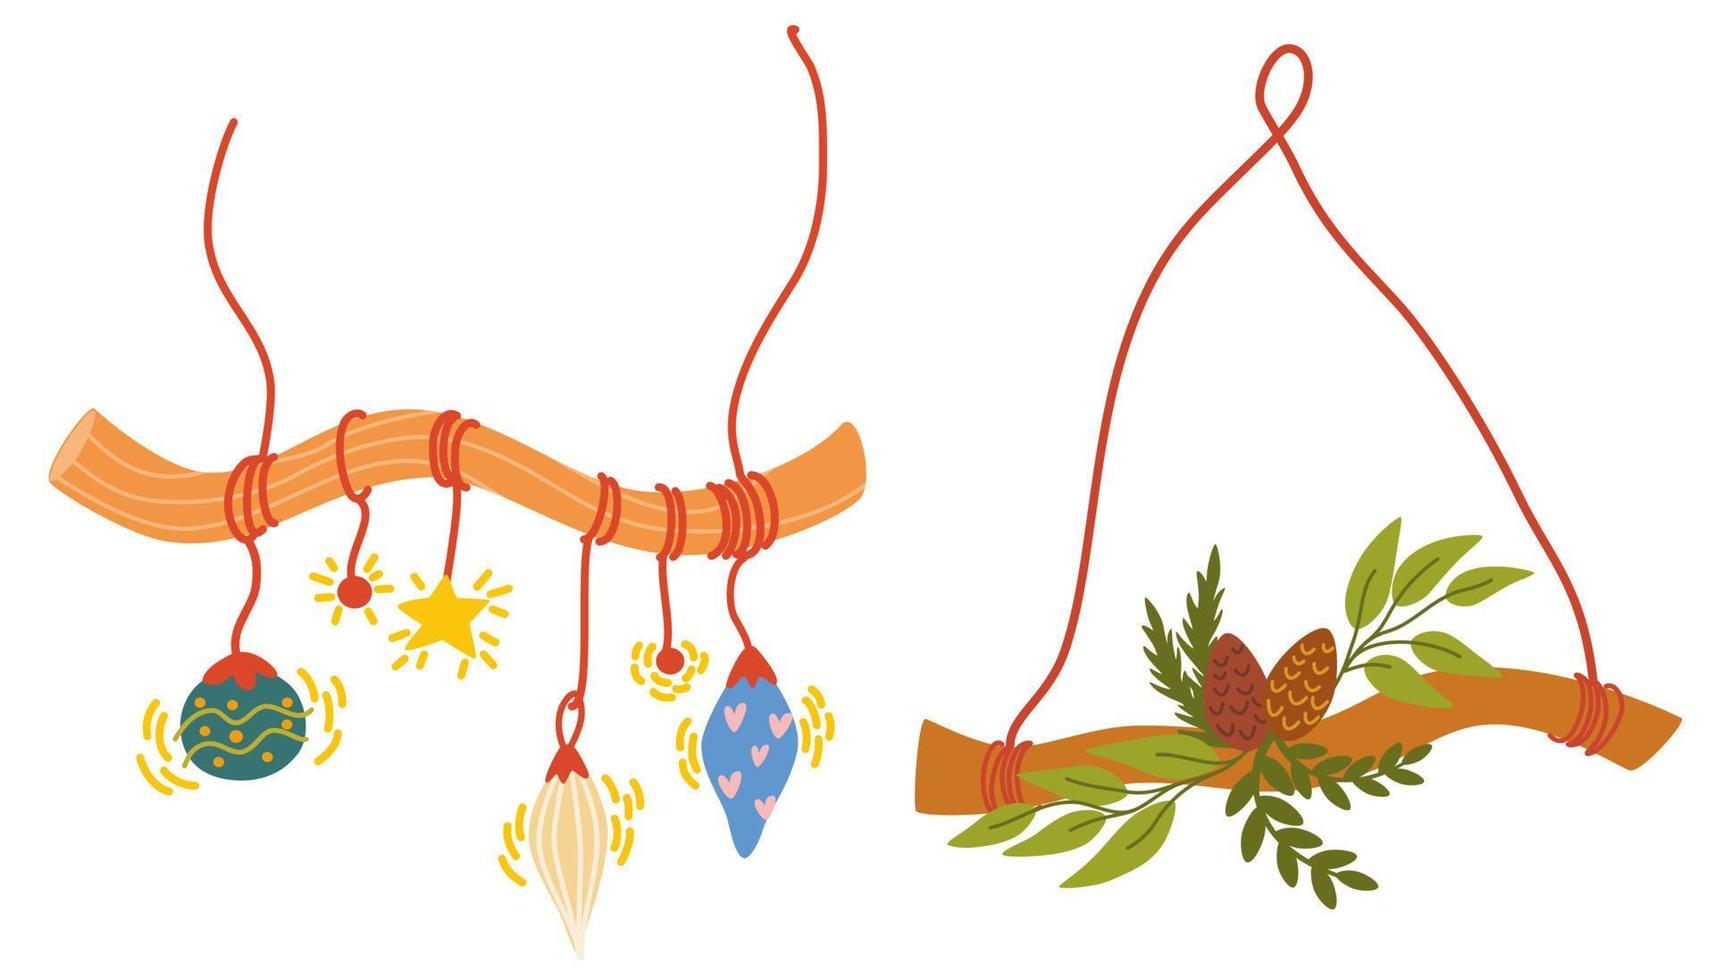 Weihnachtskränze gesetzt. dekor für neujahrsweihnachten und feiertag. Kranz mit Stechpalmenbeeren, Mistelzweigen, Kiefern- und Tannenzweigen, Zapfen, Vogelbeeren. hand gezeichnete illustration isoliert vektor